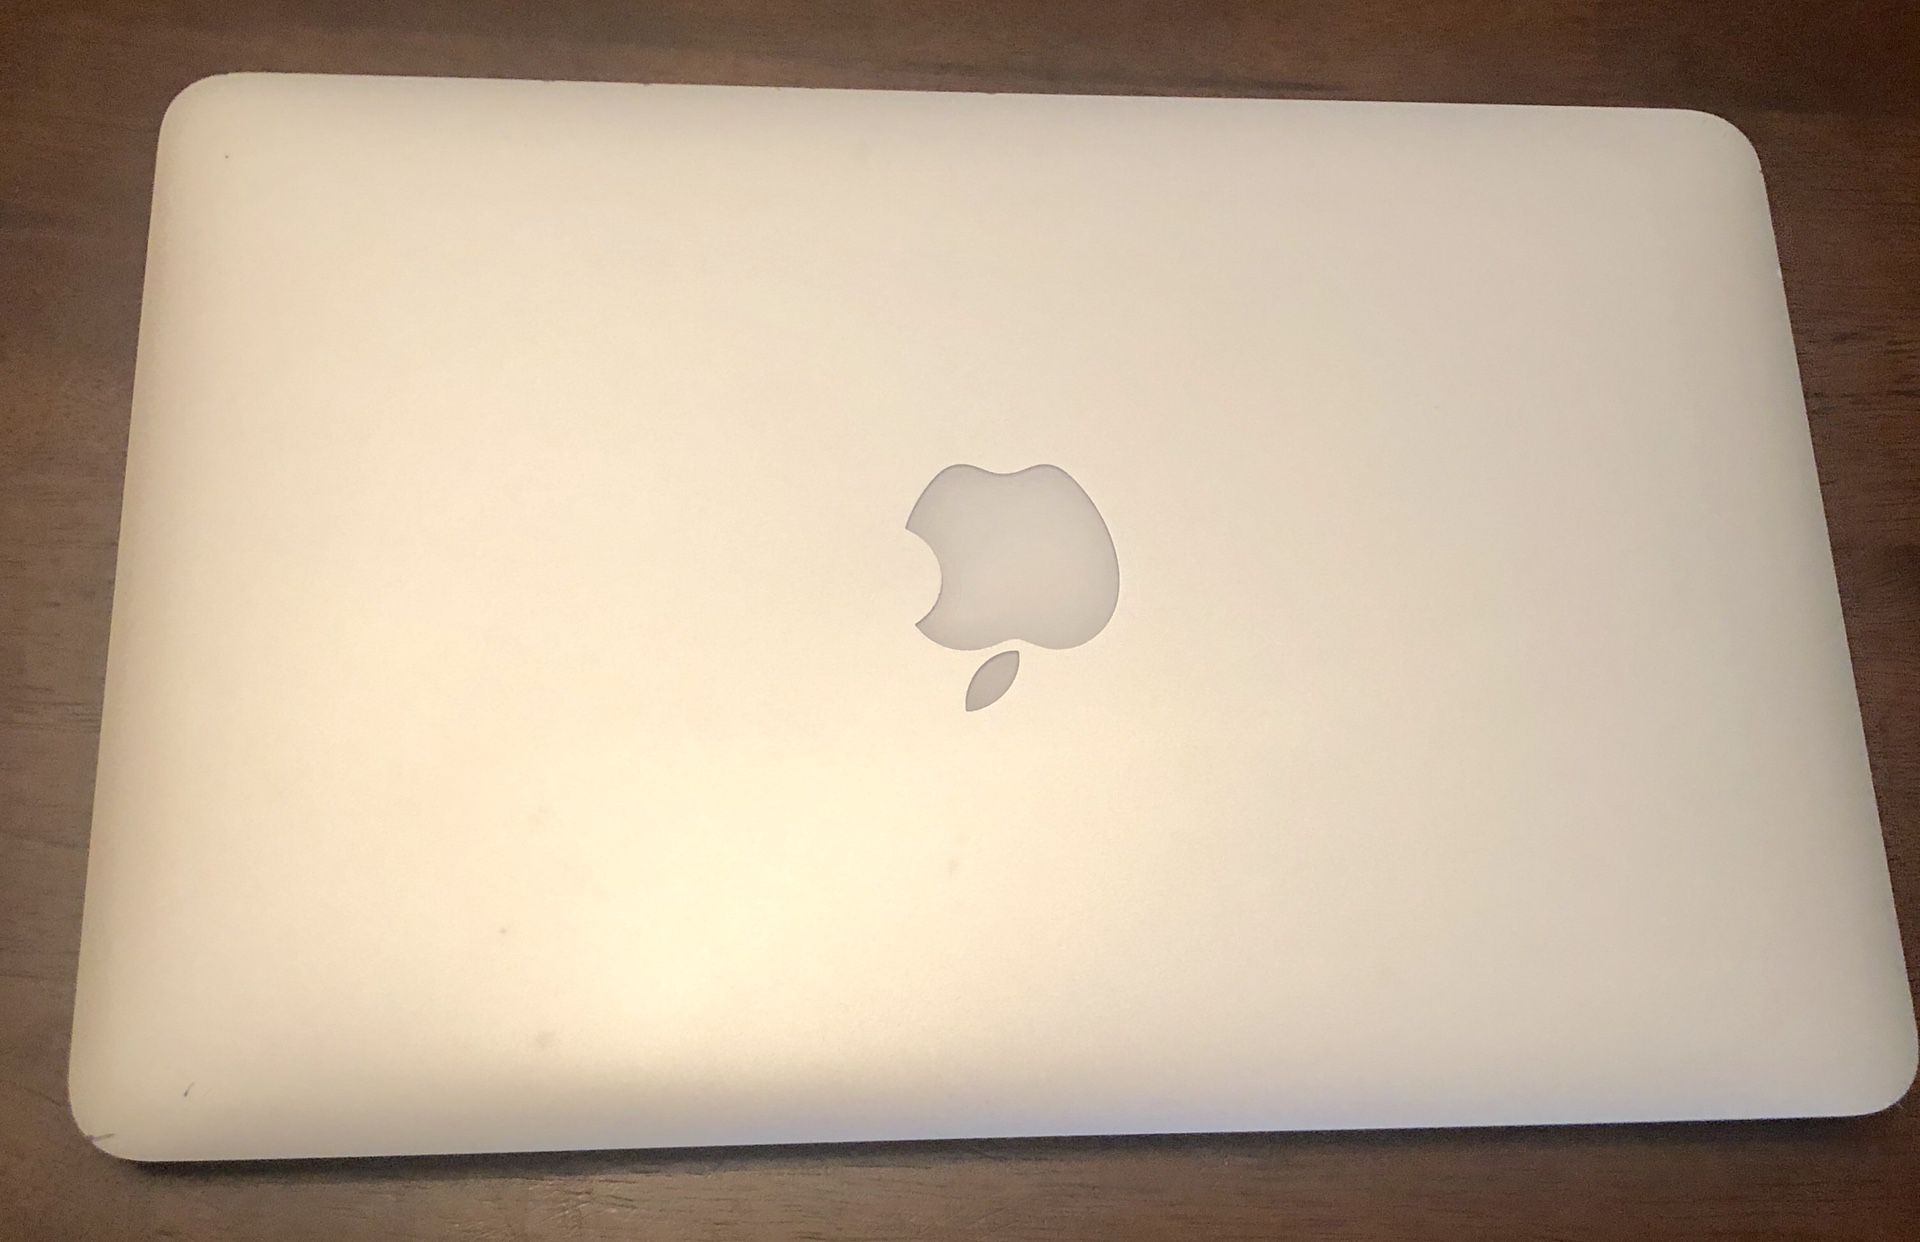 Apple MacBook Air lap top